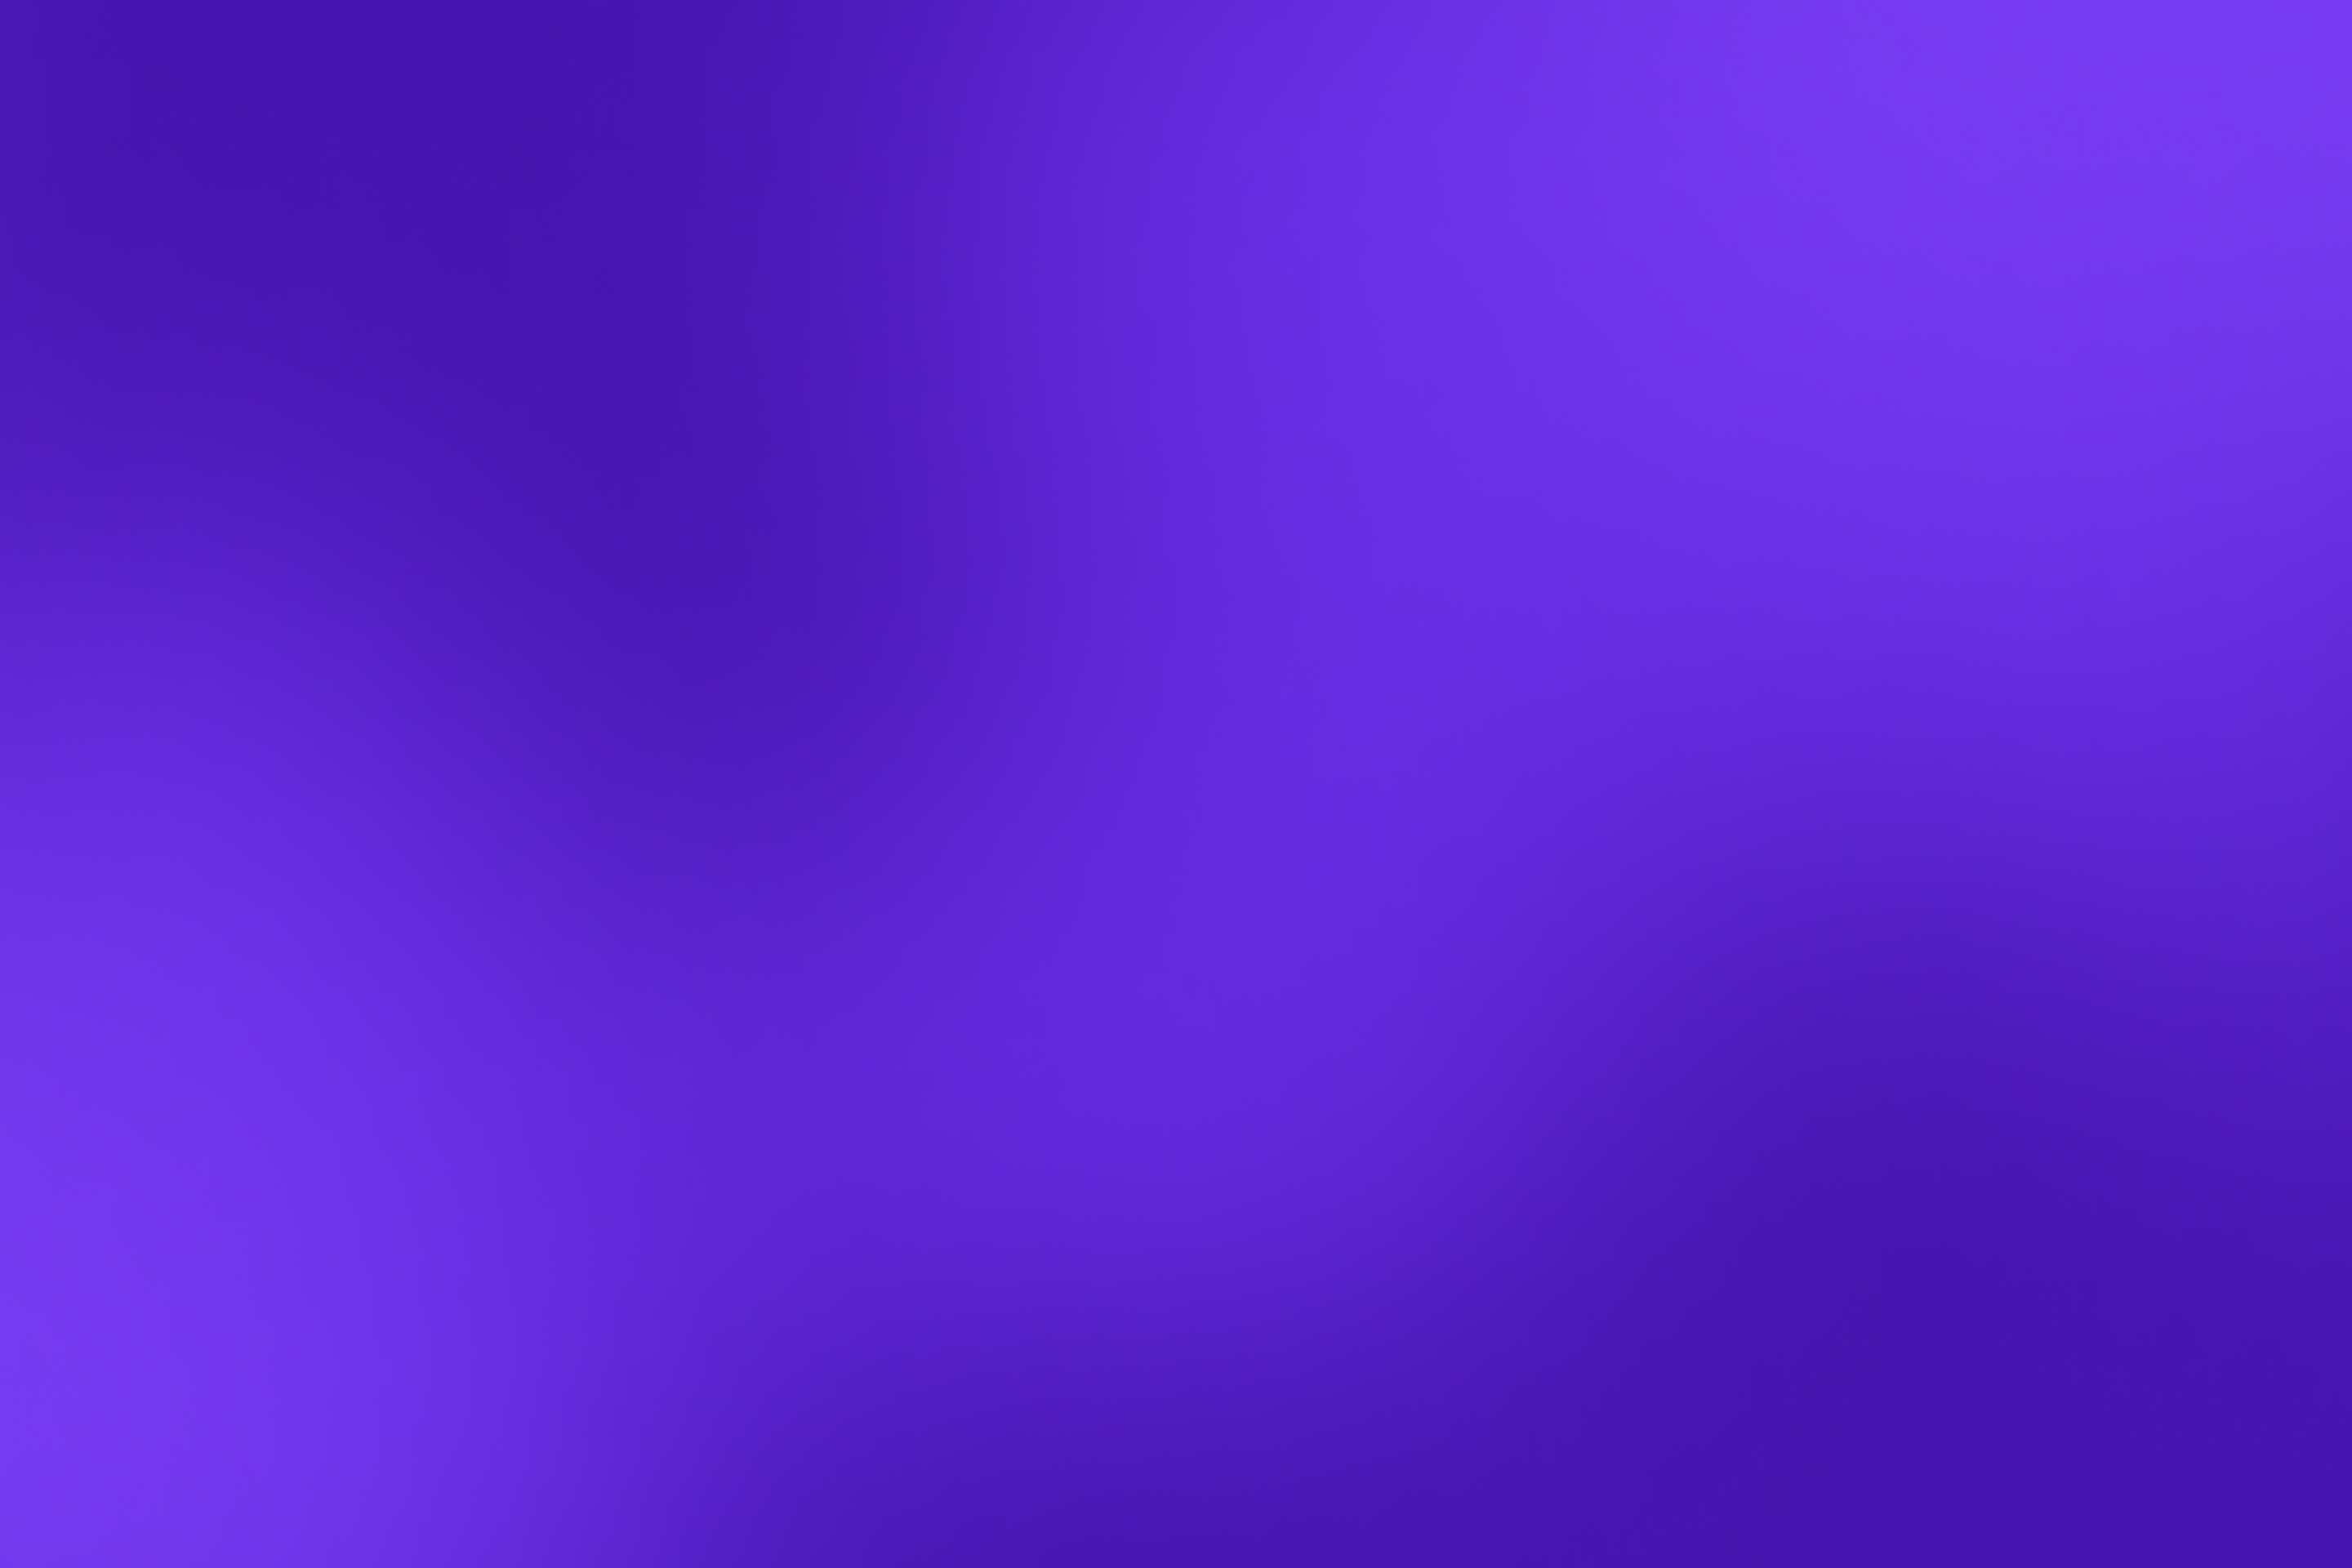 Bright purple gradient background.